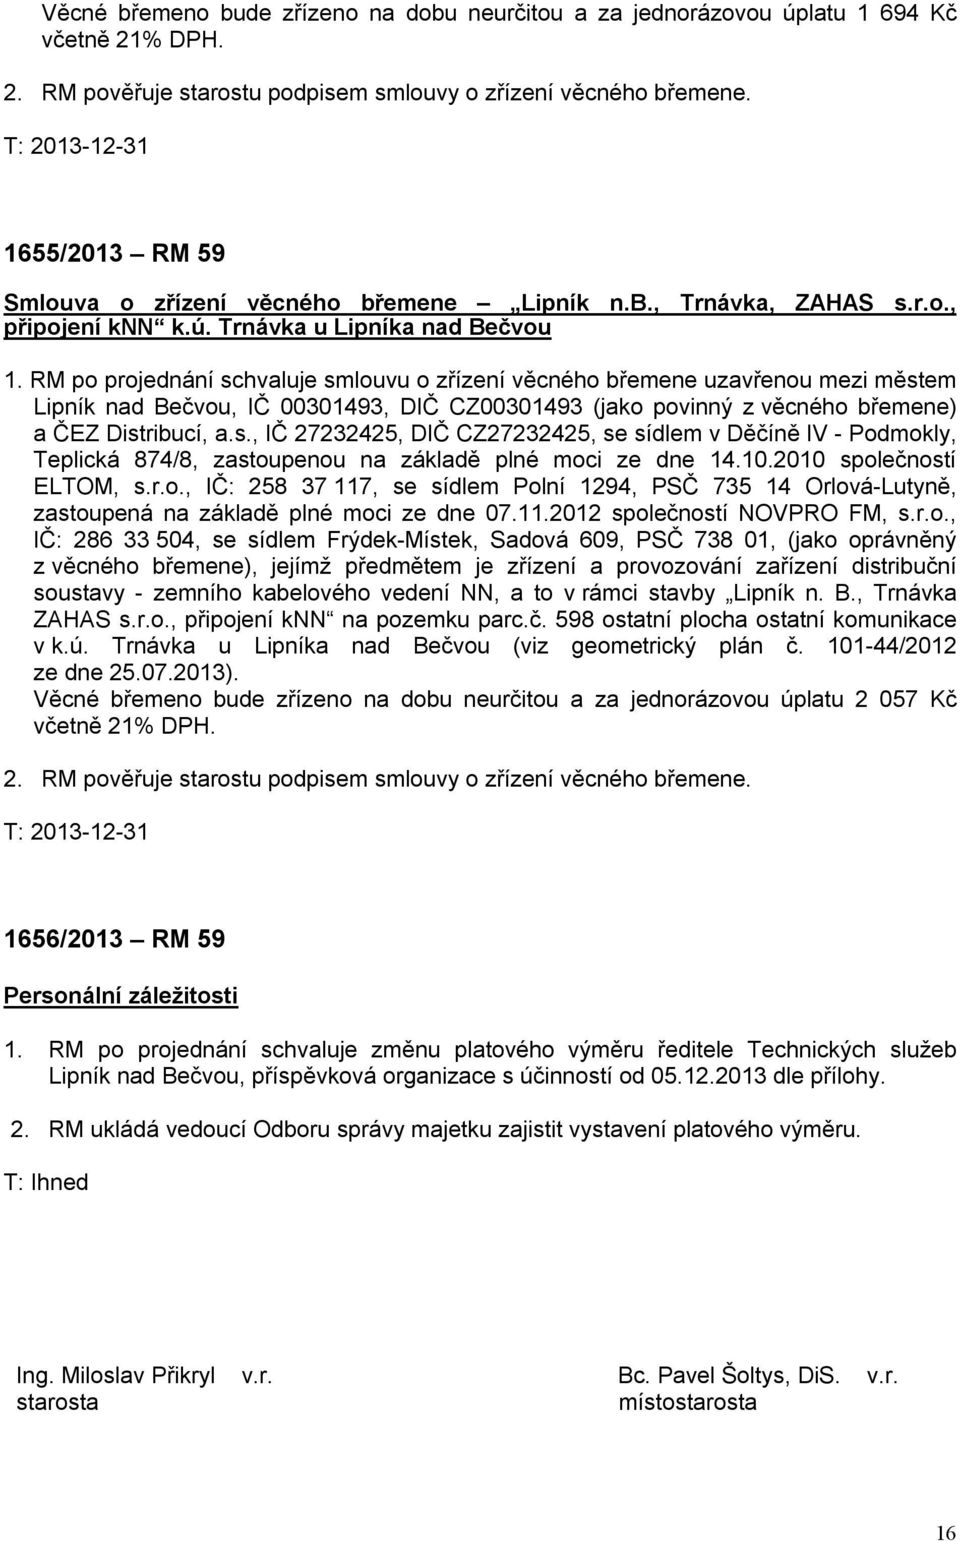 RM po projednání schvaluje smlouvu o zřízení věcného břemene uzavřenou mezi městem Lipník nad Bečvou, IČ 00301493, DIČ CZ00301493 (jako povinný z věcného břemene) a ČEZ Distribucí, a.s., IČ 27232425, DIČ CZ27232425, se sídlem v Děčíně IV - Podmokly, Teplická 874/8, zastoupenou na základě plné moci ze dne 14.